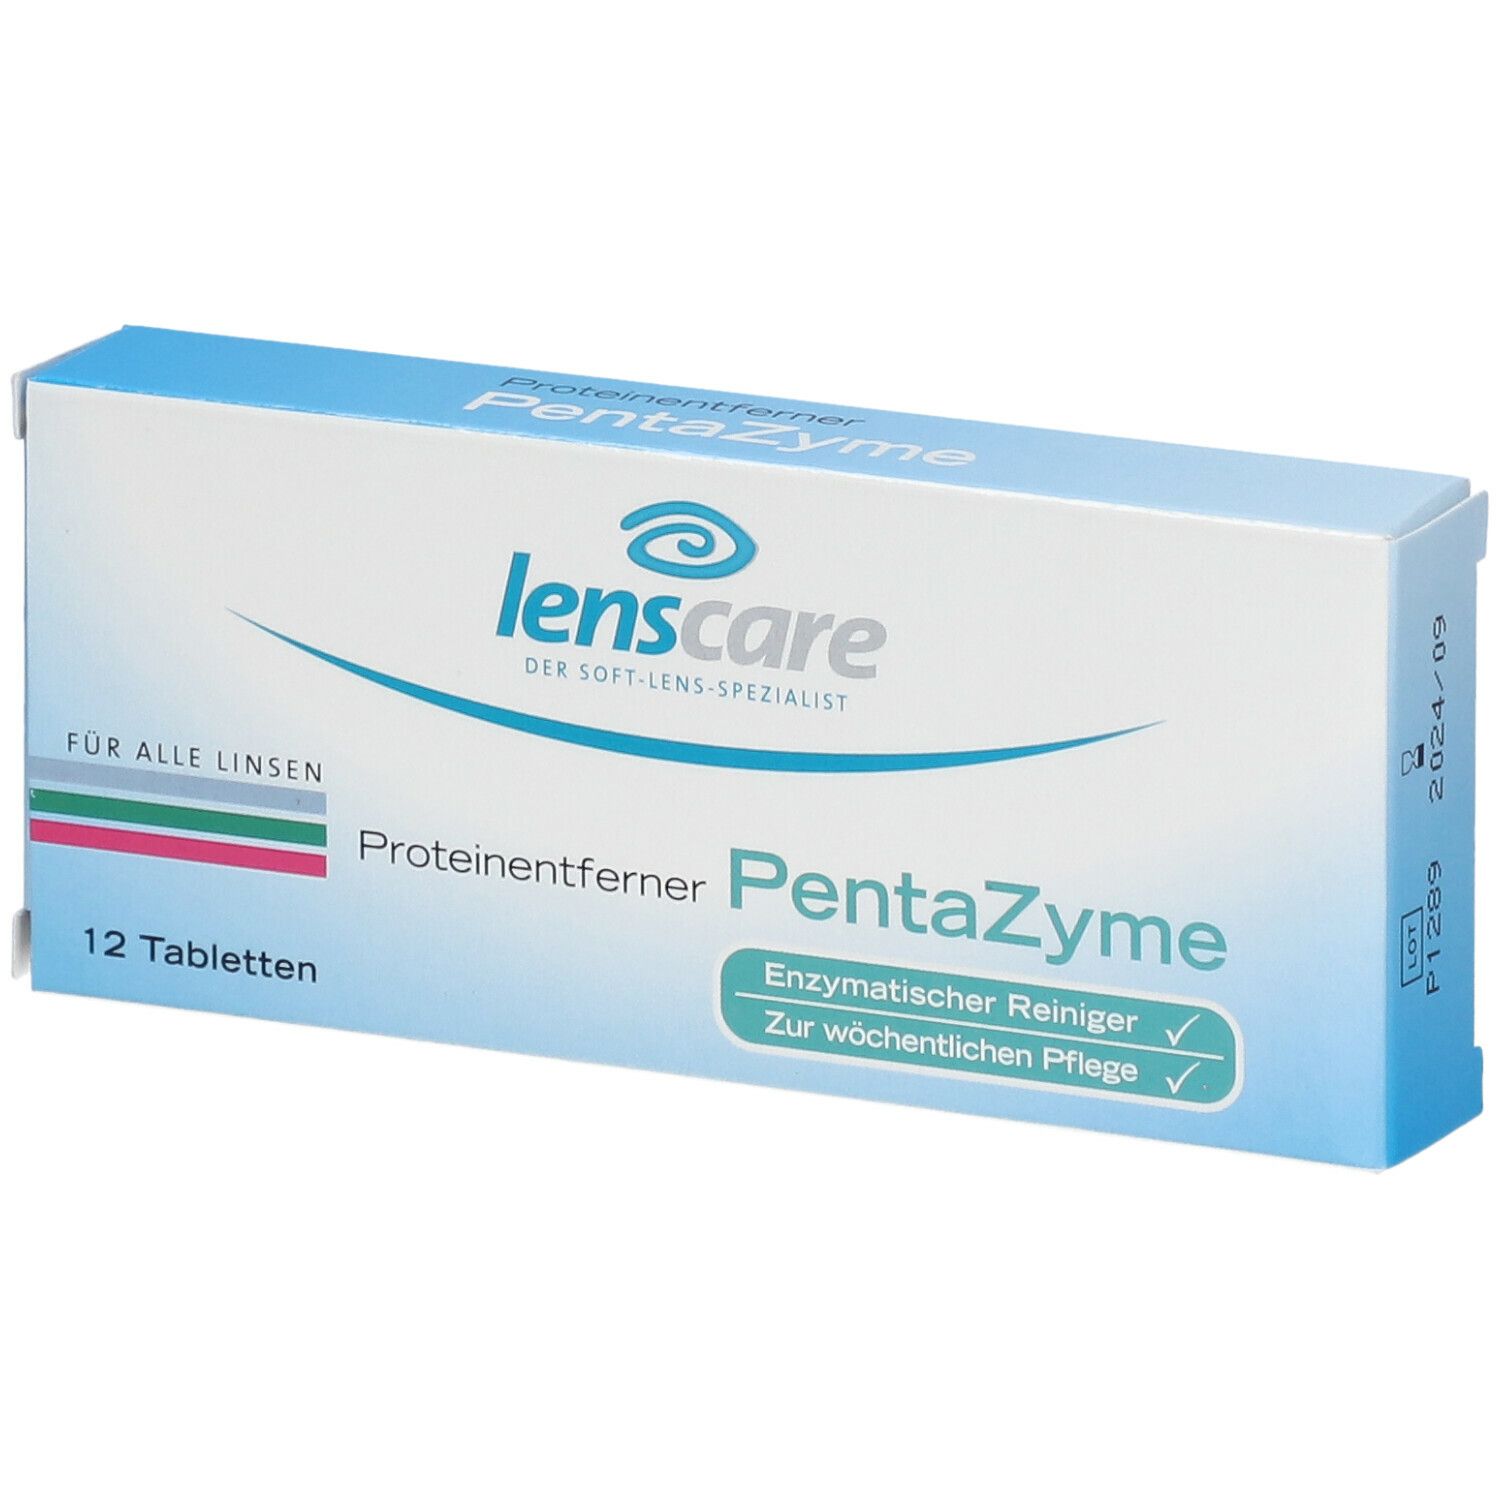 Lenscare Pentazyme Proteinentferner